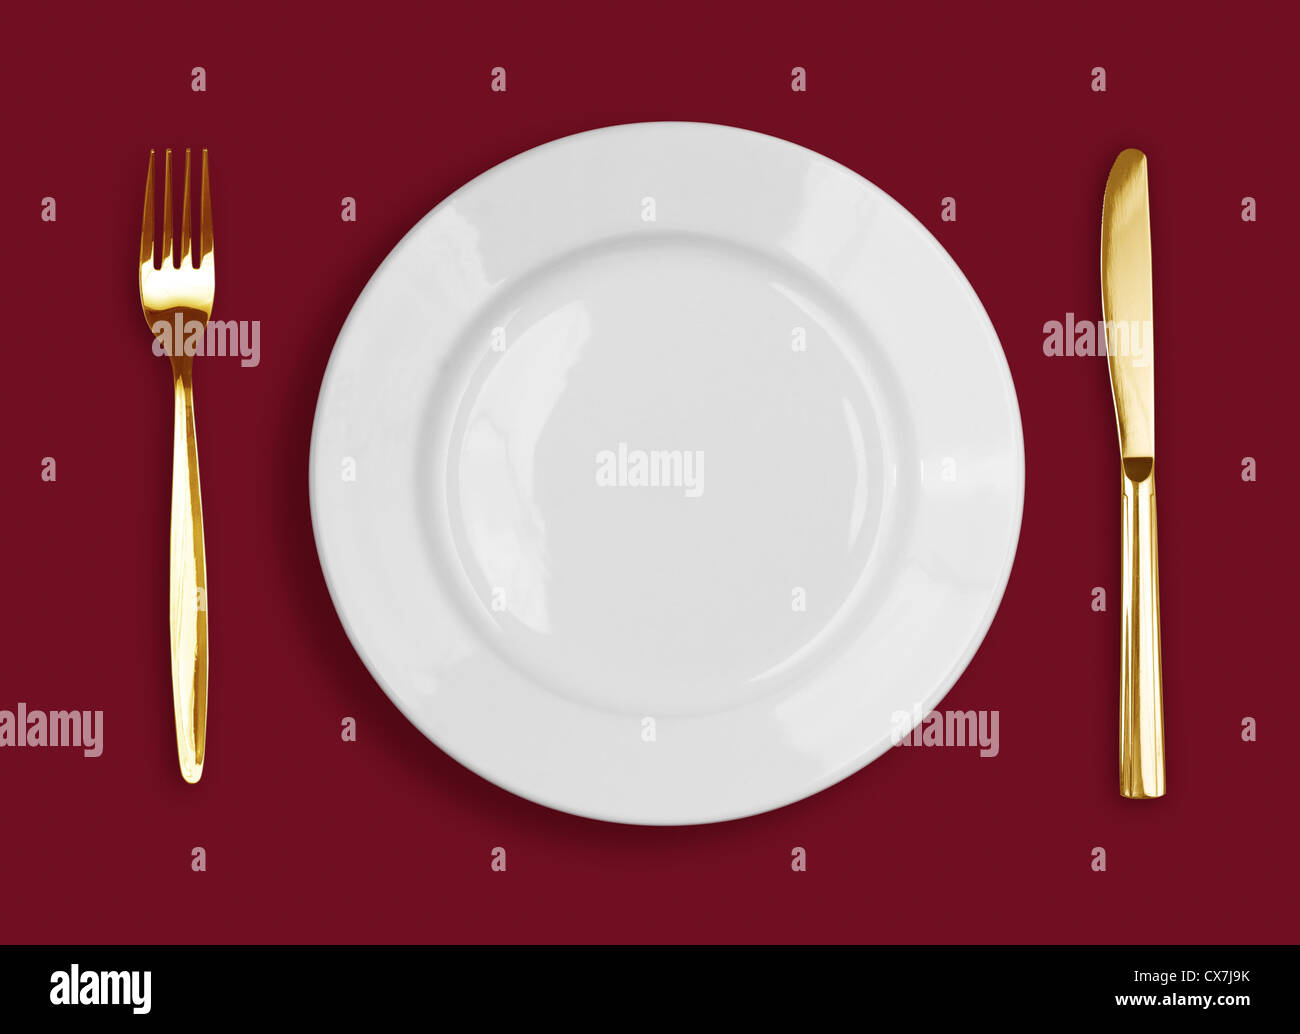 Golden coltello, forchetta e piastra bianca su sfondo rosso Foto Stock